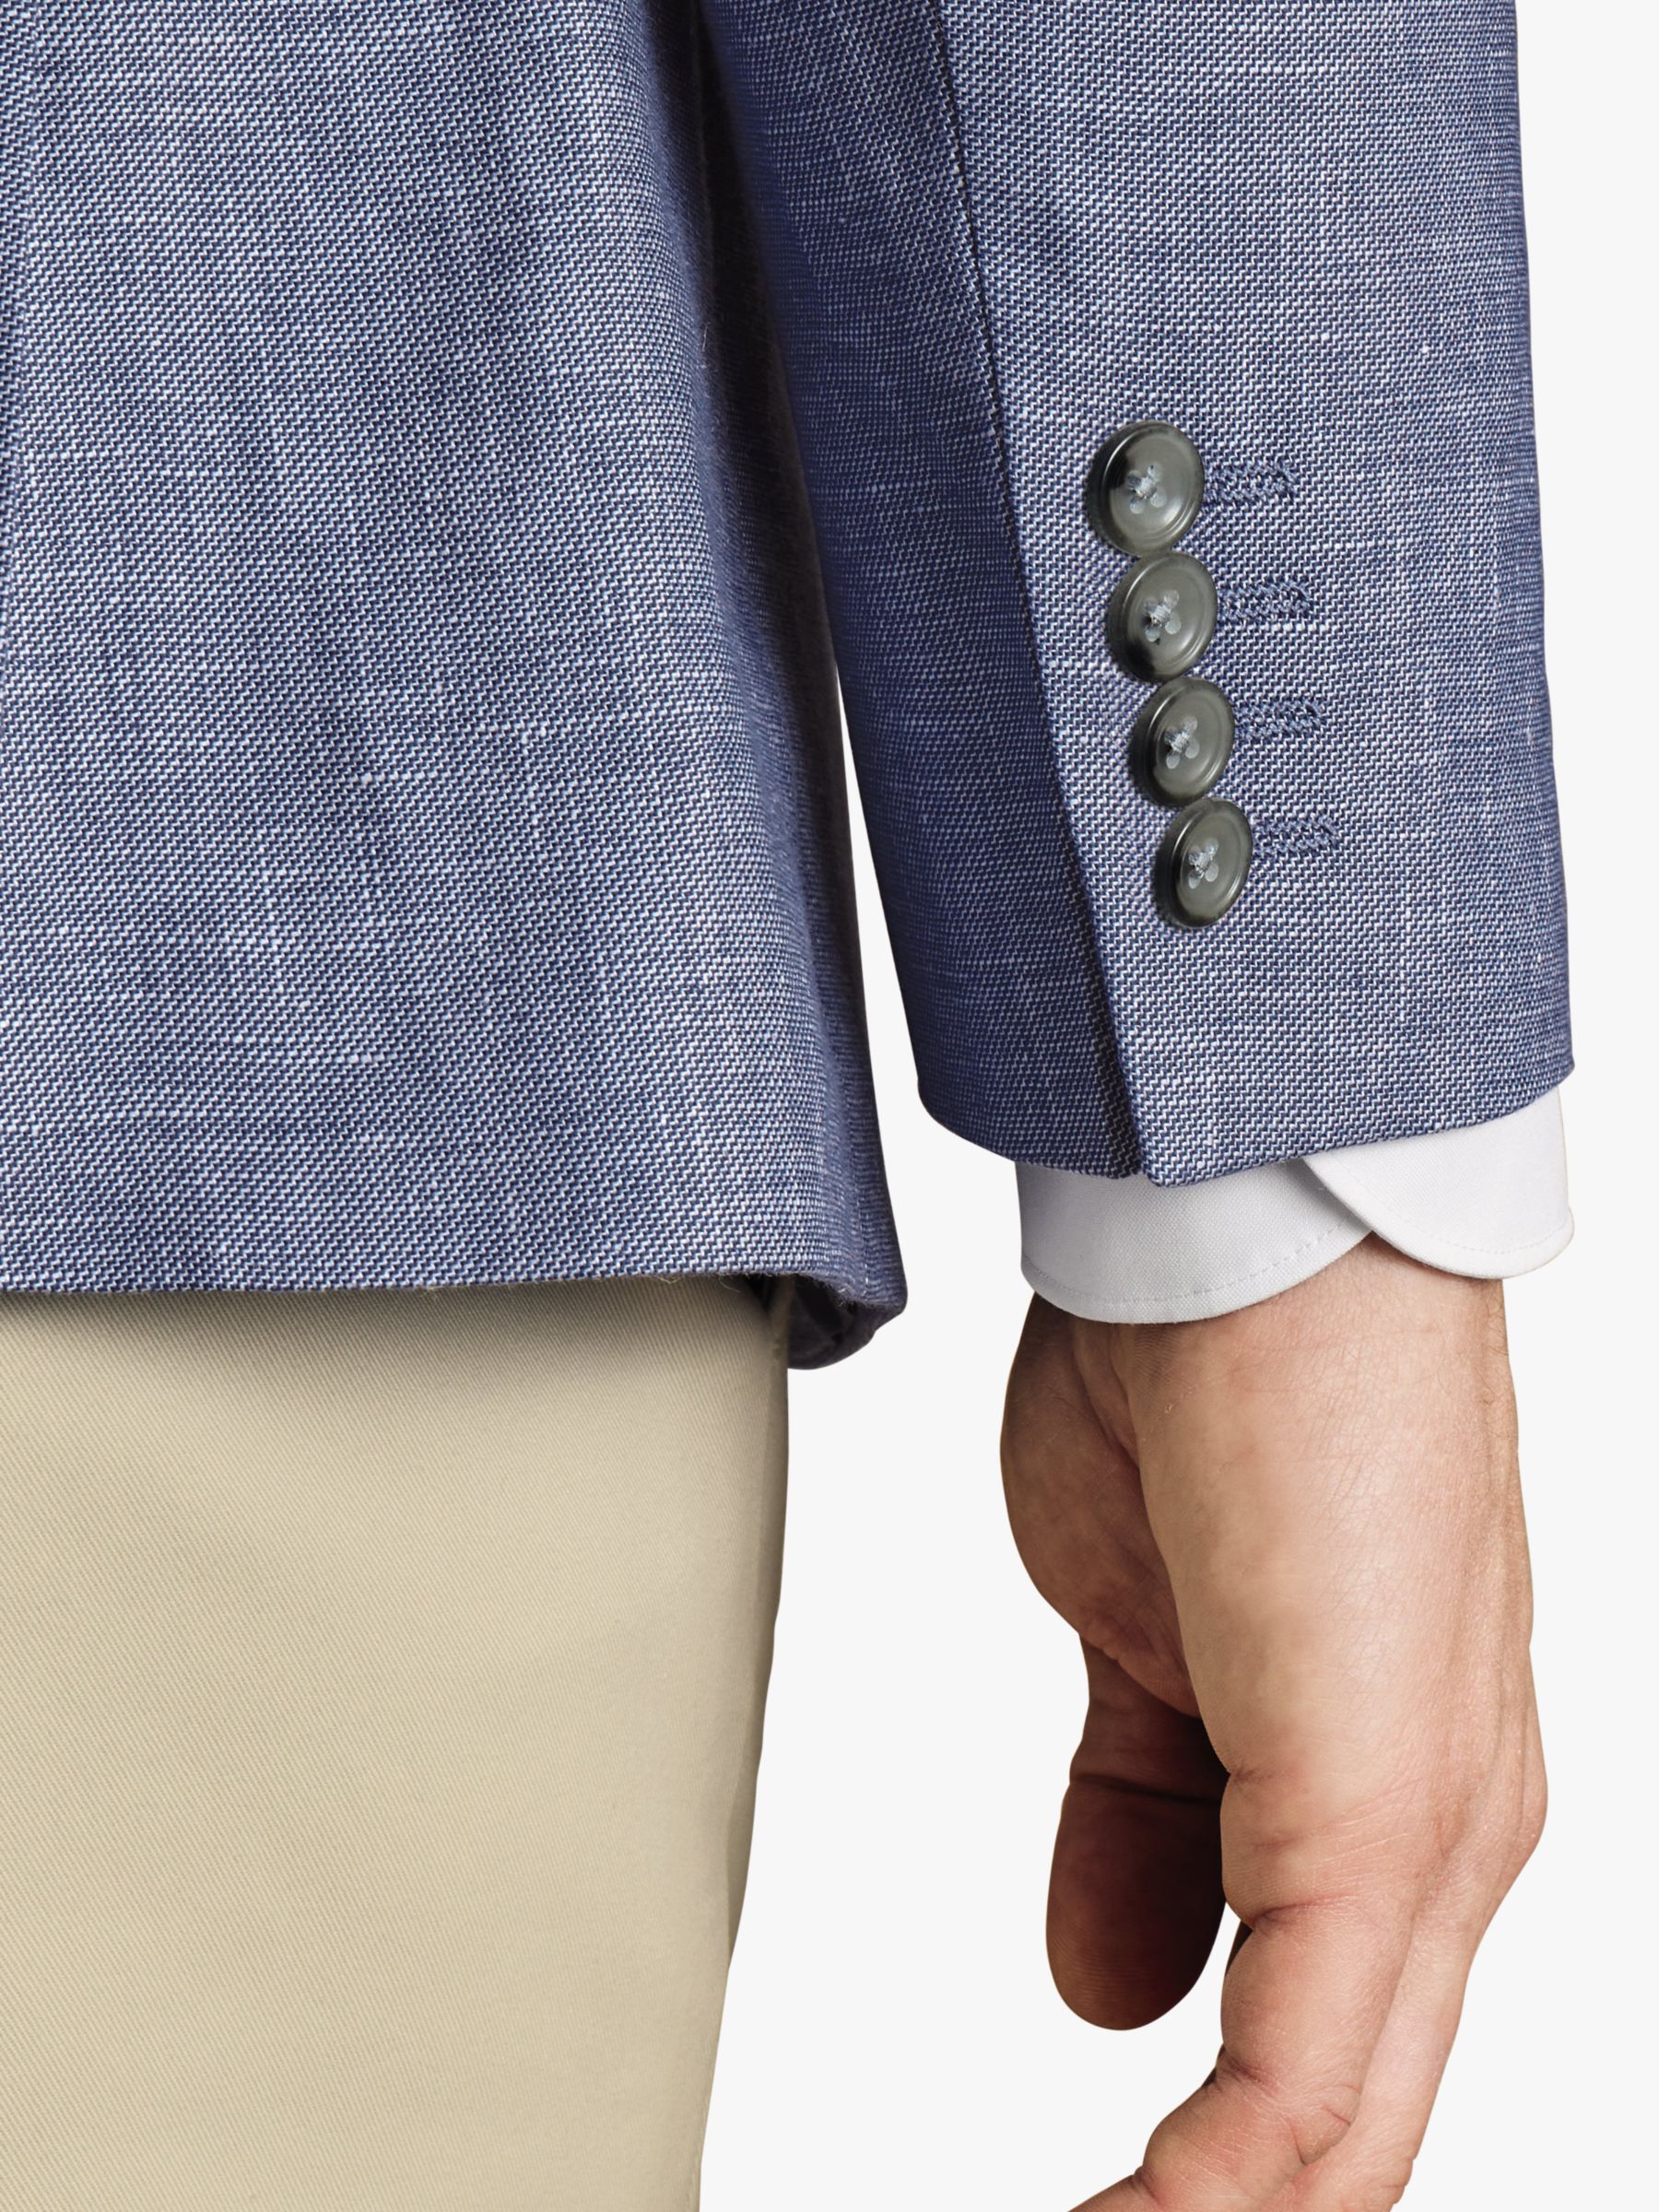 Charles Tyrwhitt Classic Fit Linen Cotton Blend Jacket, Cobalt Blue, 40R